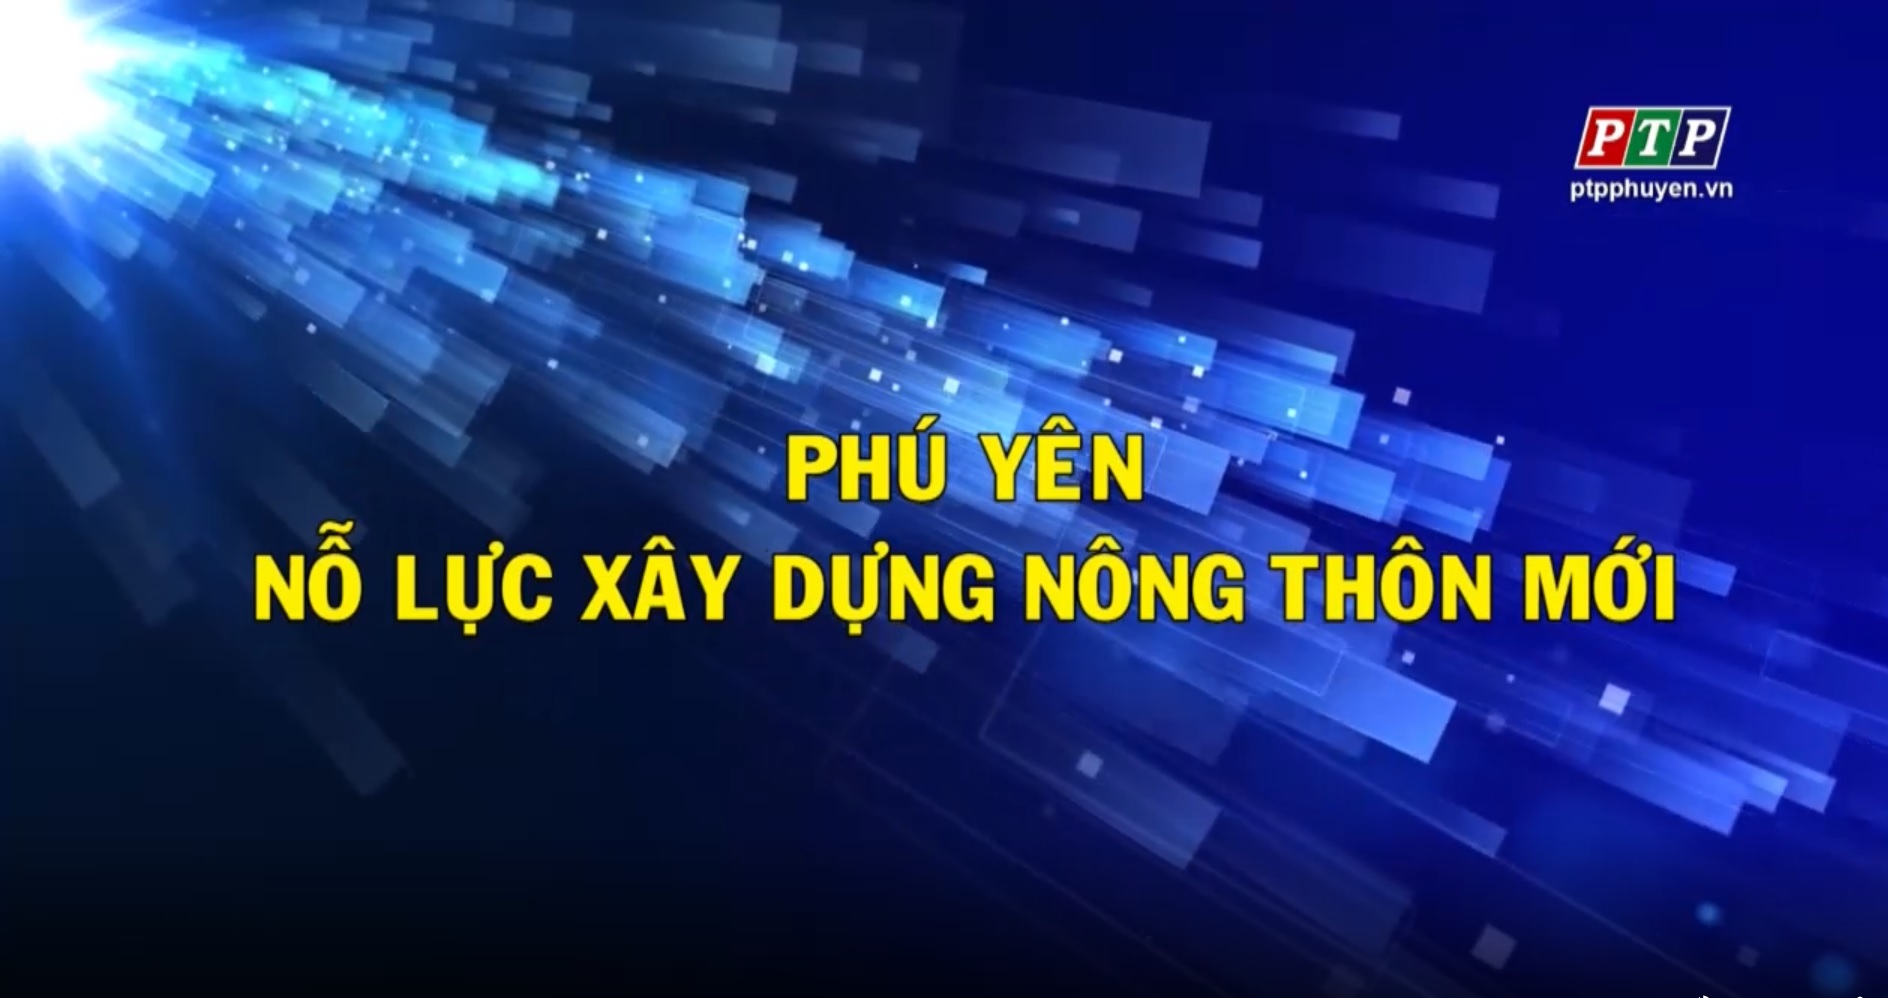 PS: Phú Yên Nỗ Lực Xây Dựng Nông Thôn Mới